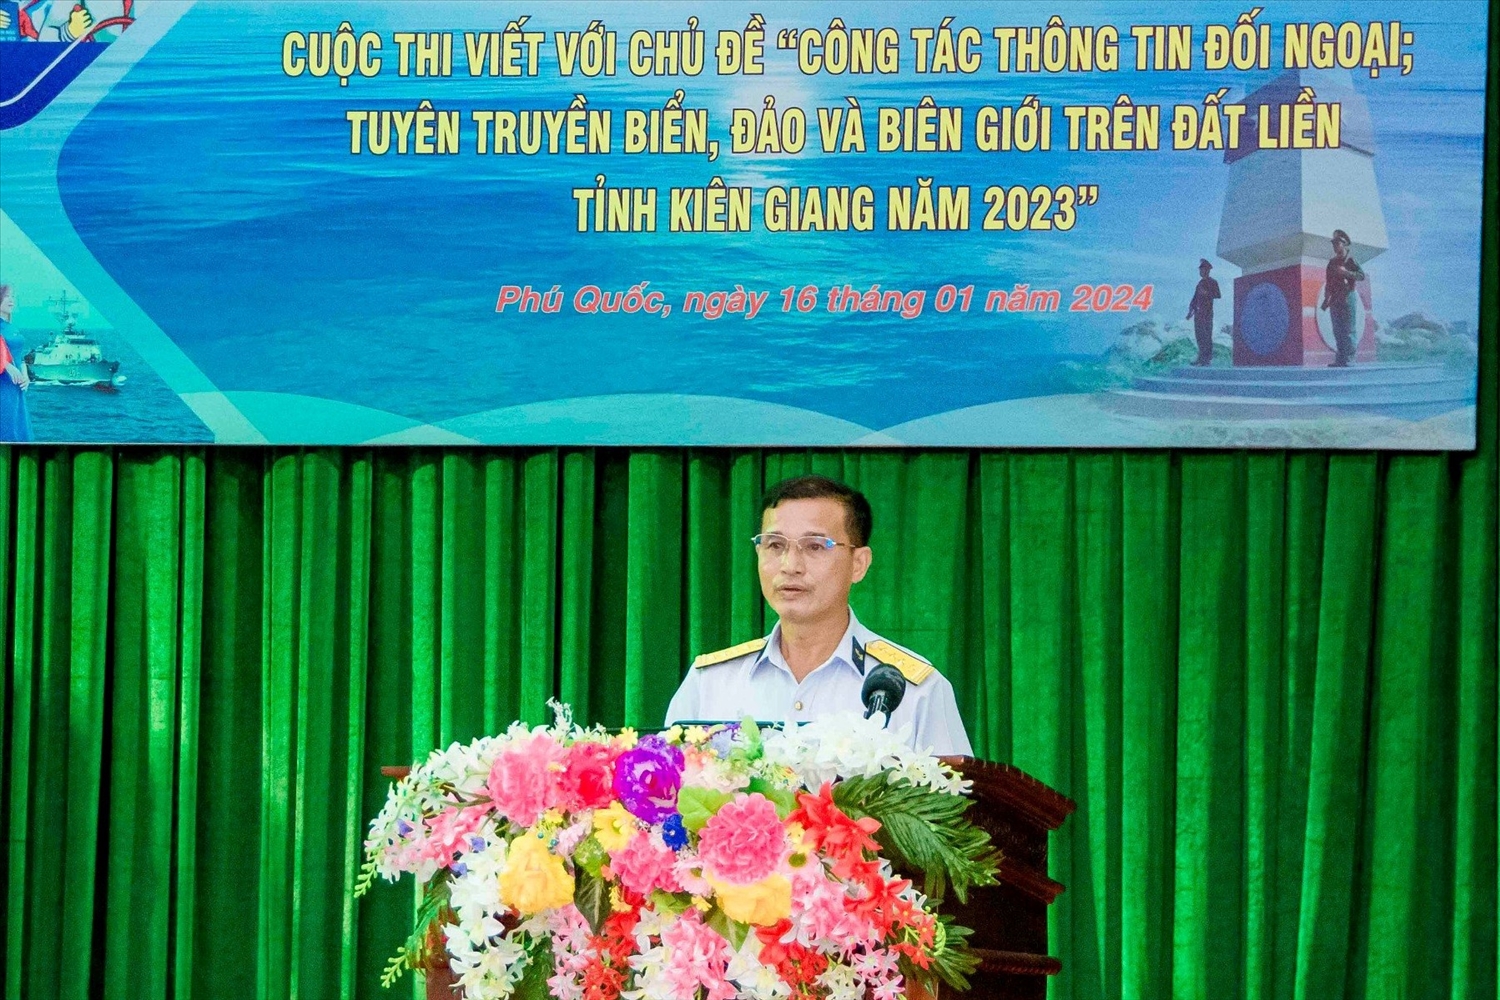 Đại tá Lê Văn Hưởng - Phó Chính ủy Bộ Tư lệnh Vùng 5 Hải quân phát biểu tại buổi lễ